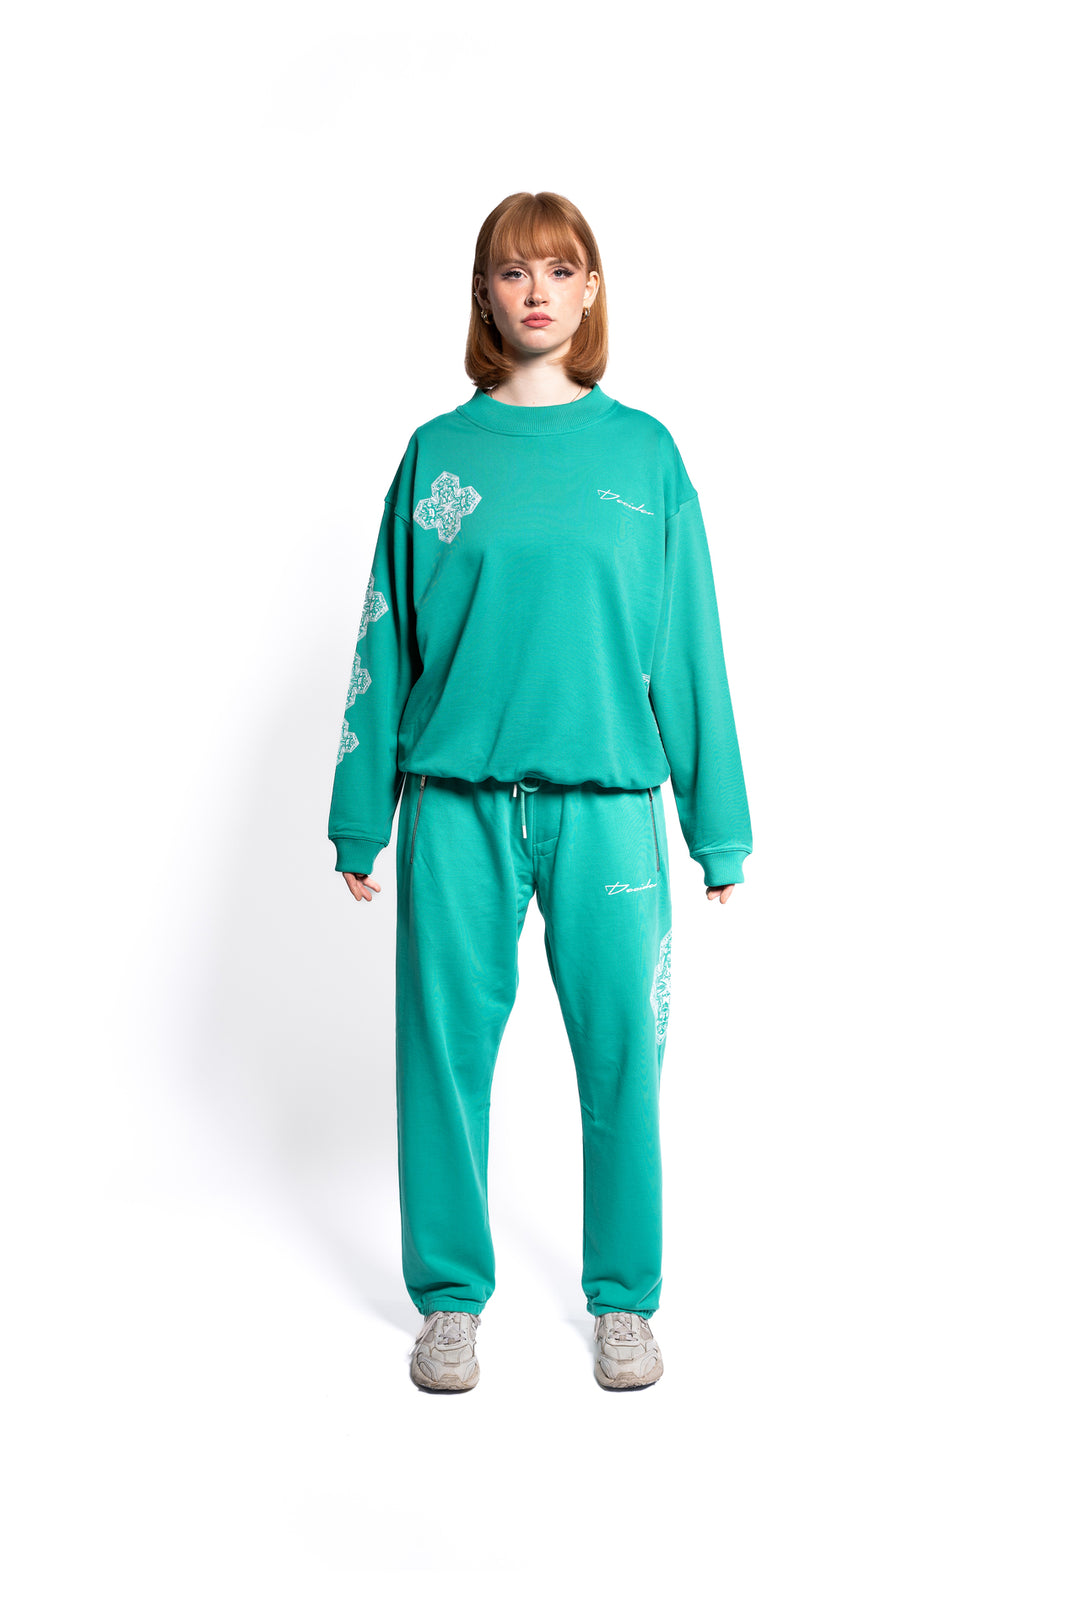 Weibliches Model präsentiert ein smaragdgrünes, übergroßes Sweatshirt mit passender Jogginghose, die mit weißen Mustern akzentuiert ist